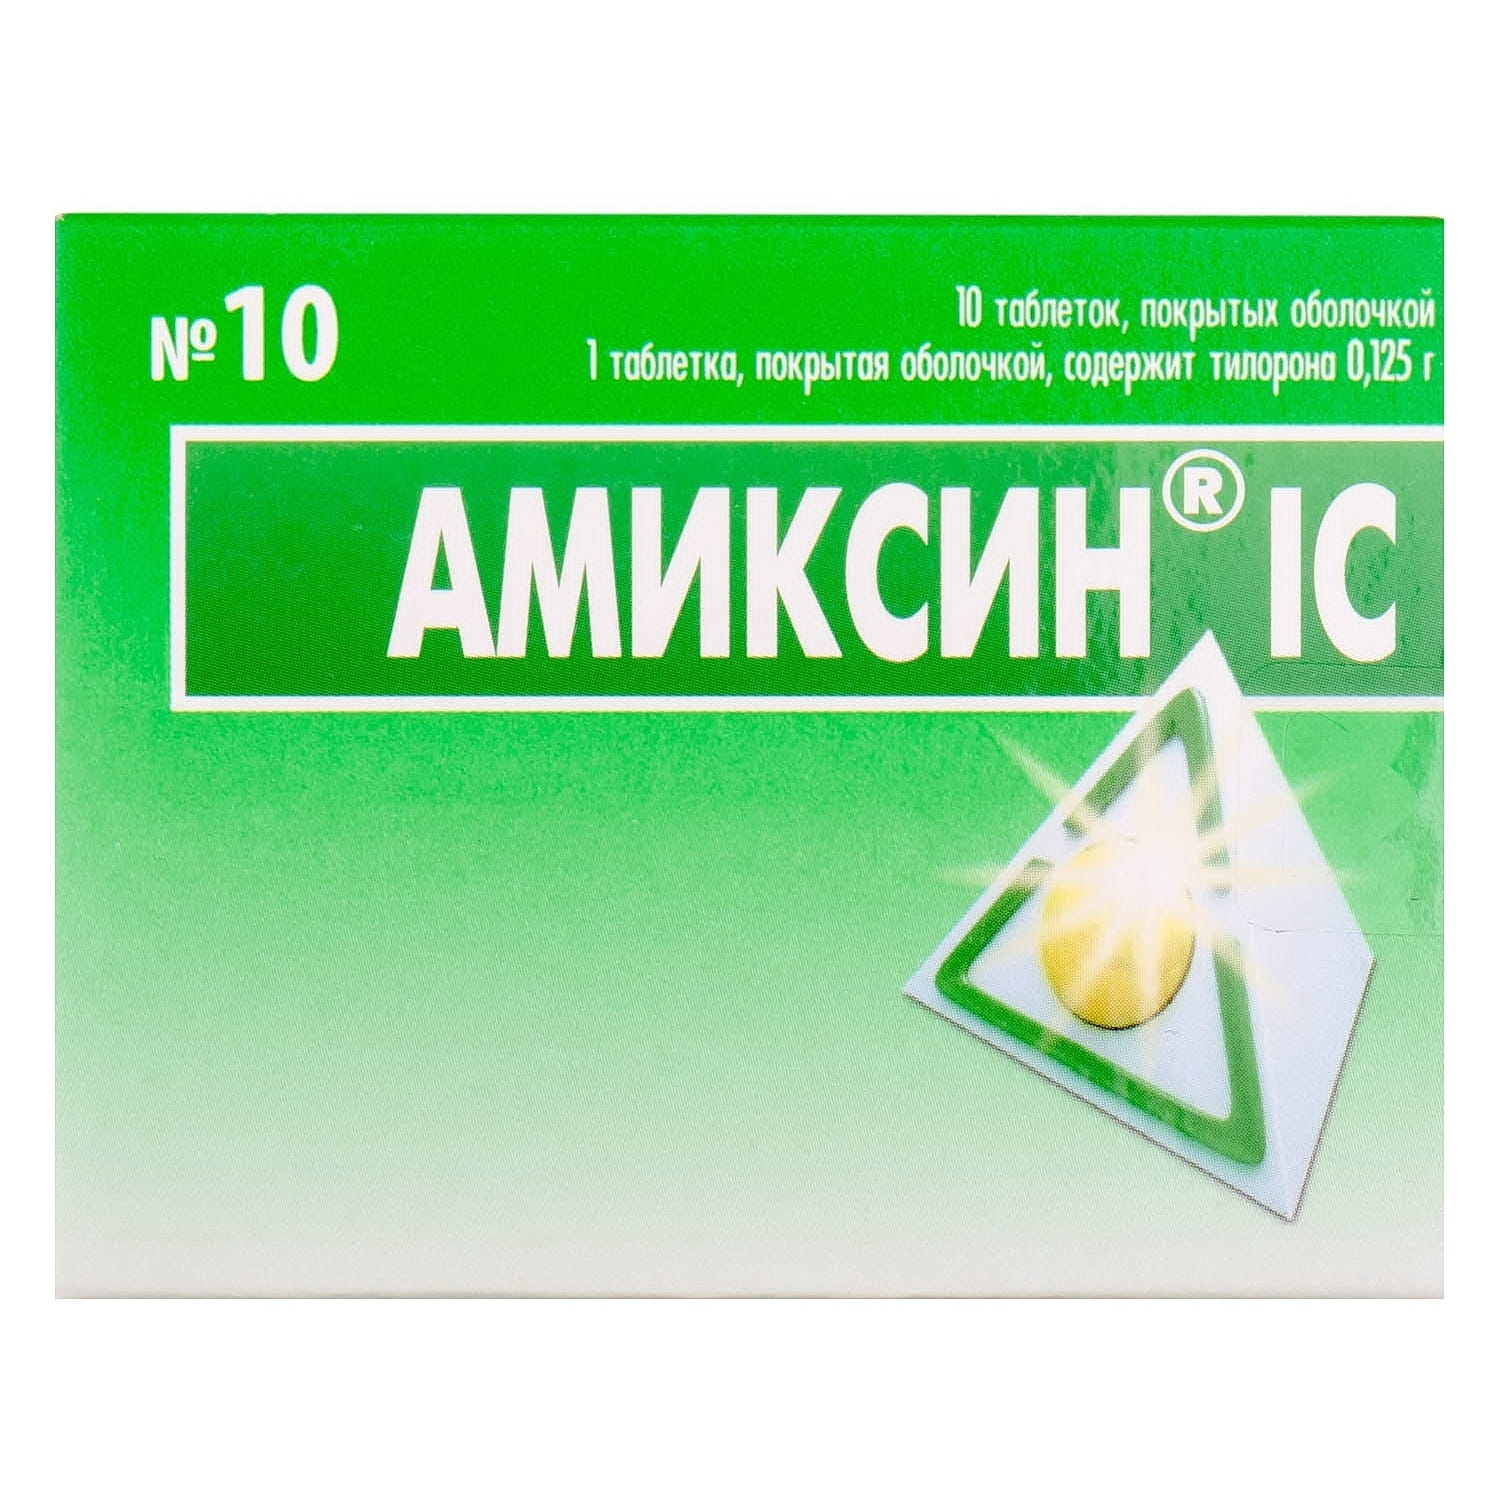 Таблетки Амиксин 125 мг. Амиксин ic. Амиксин 60. Амиксин аналоги таблетки. Купить таблетки амиксин